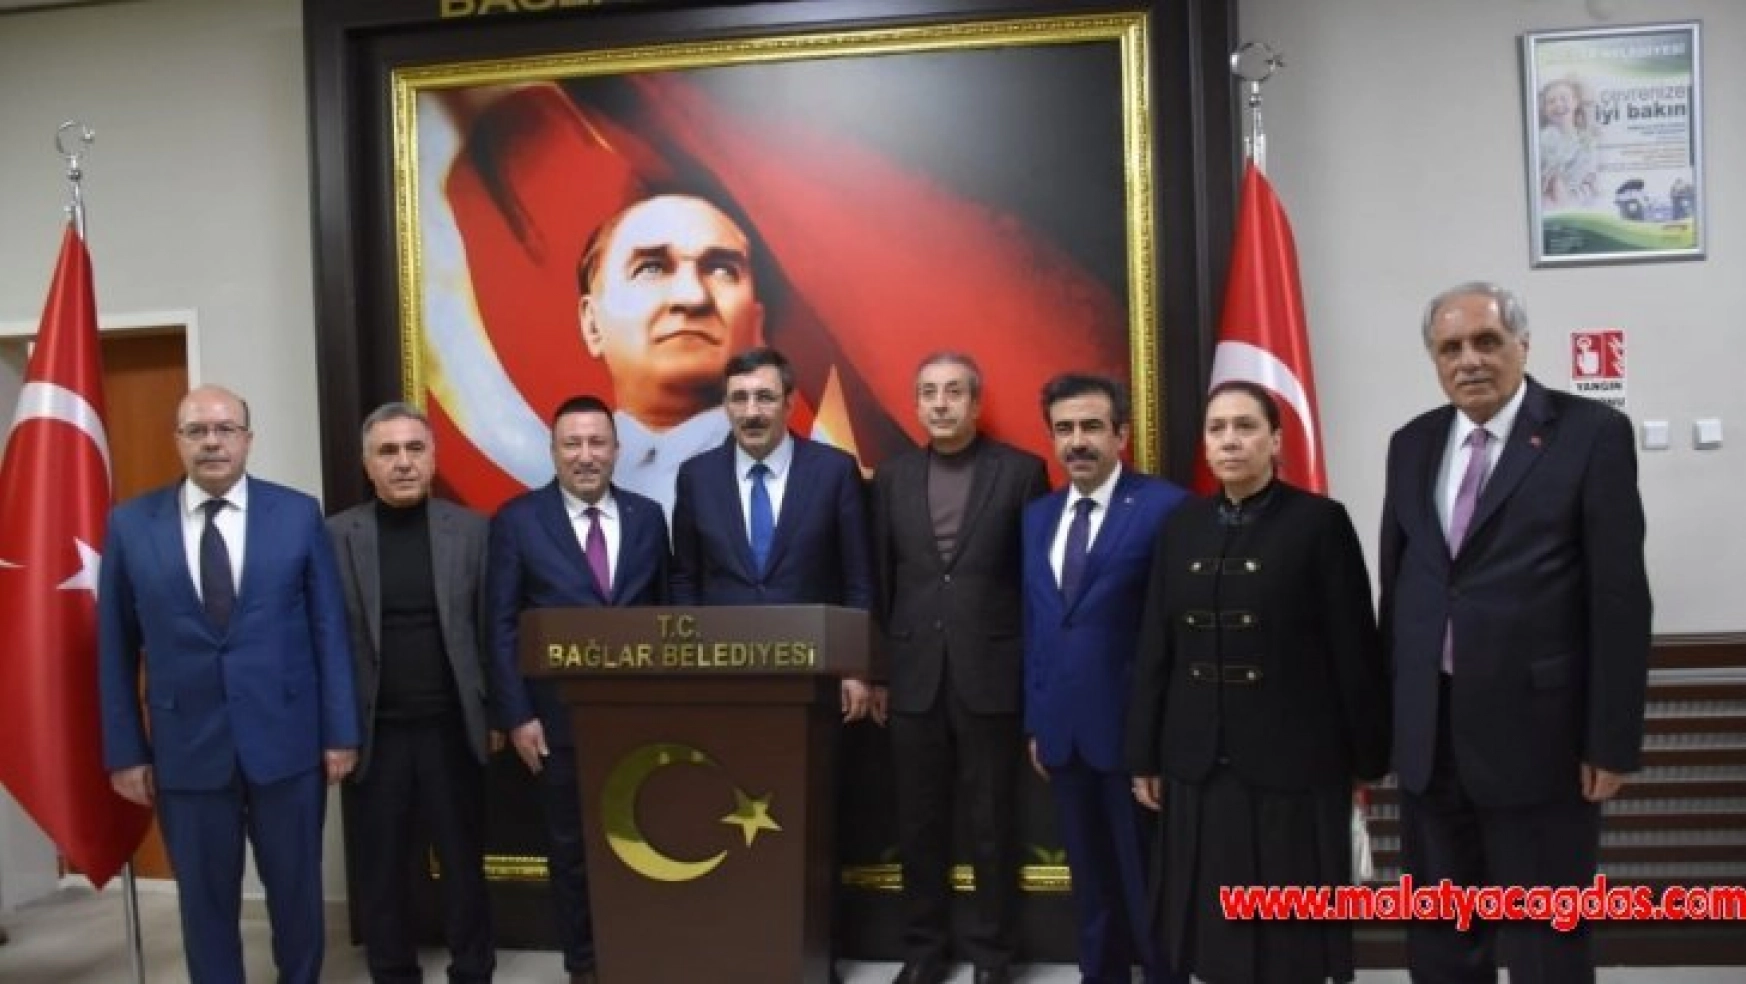 AK Parti Genel Başkan Yardımcısı Yılmaz'dan Başkan Beyoğlu'na ziyaret